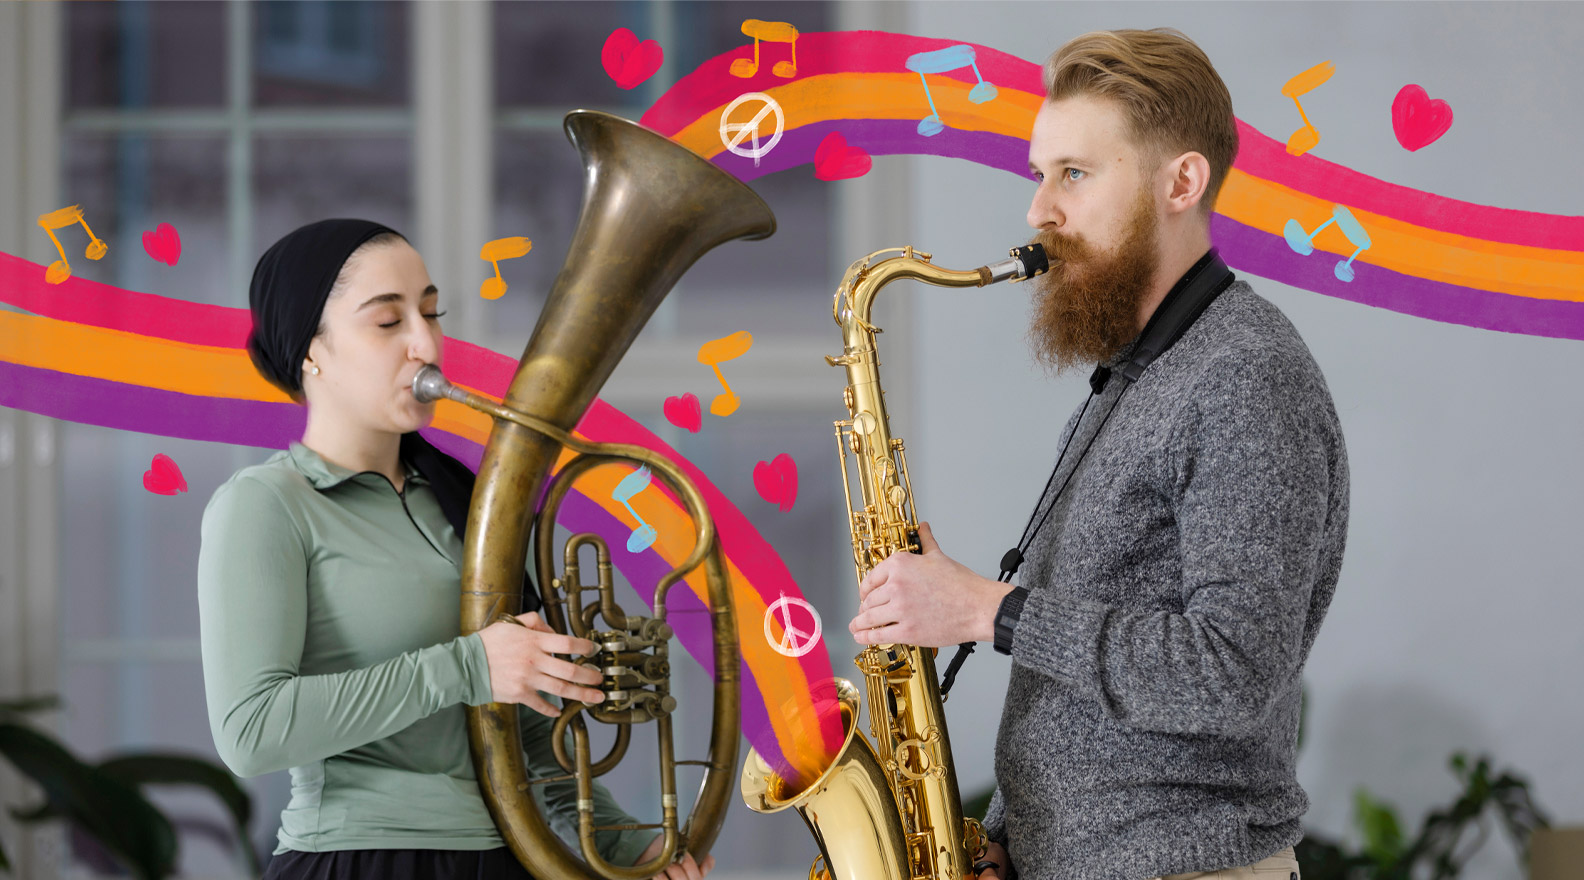 Mies ja nainen soittavat puhallinsoittimia. Kuvaan on lisätty piirroskuvituksen muodossa erilaisia soittimista lähteviä visuaalisia elementtejä.